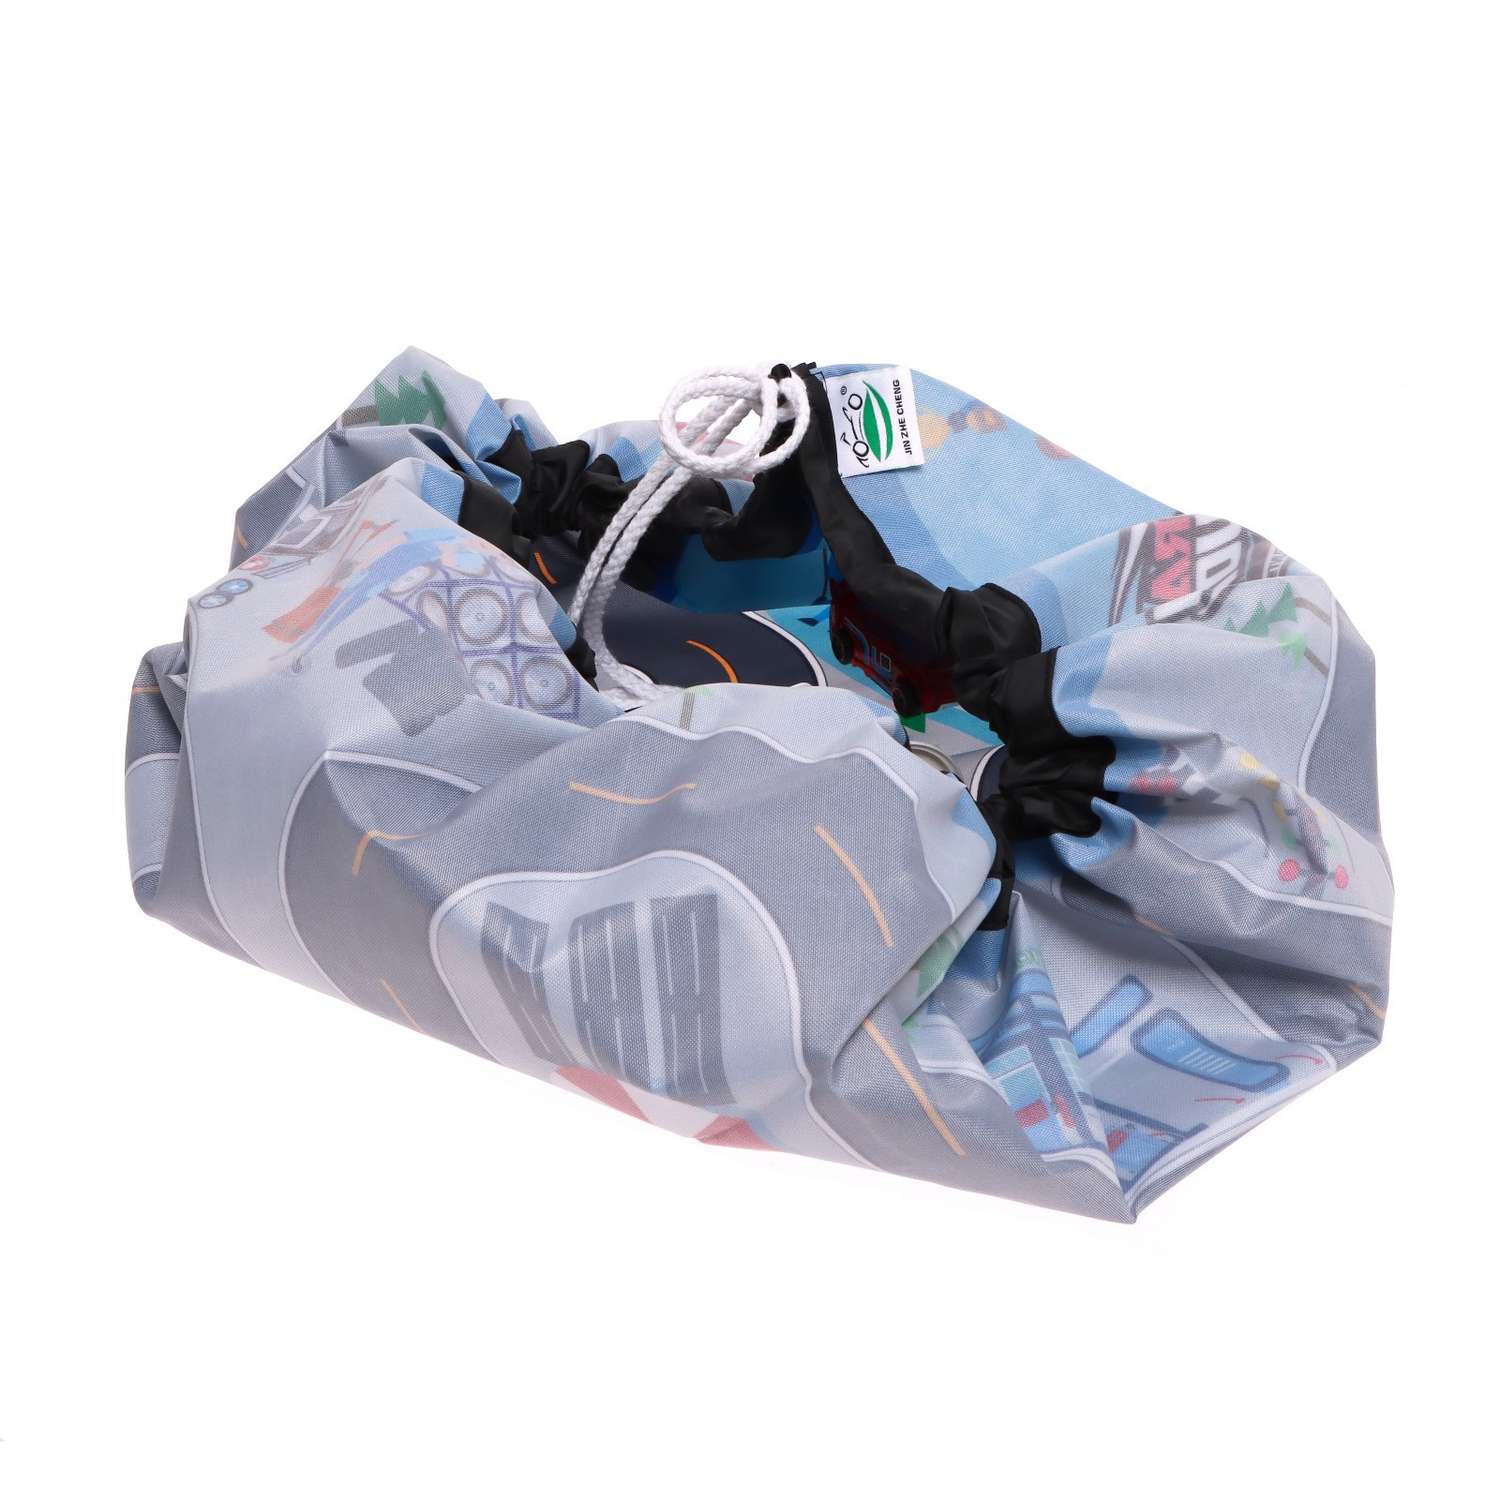 Игровой набор Sima-Land «Полиция» с металлическими машинками и ковриком-сумкой 7817337 - фото 6